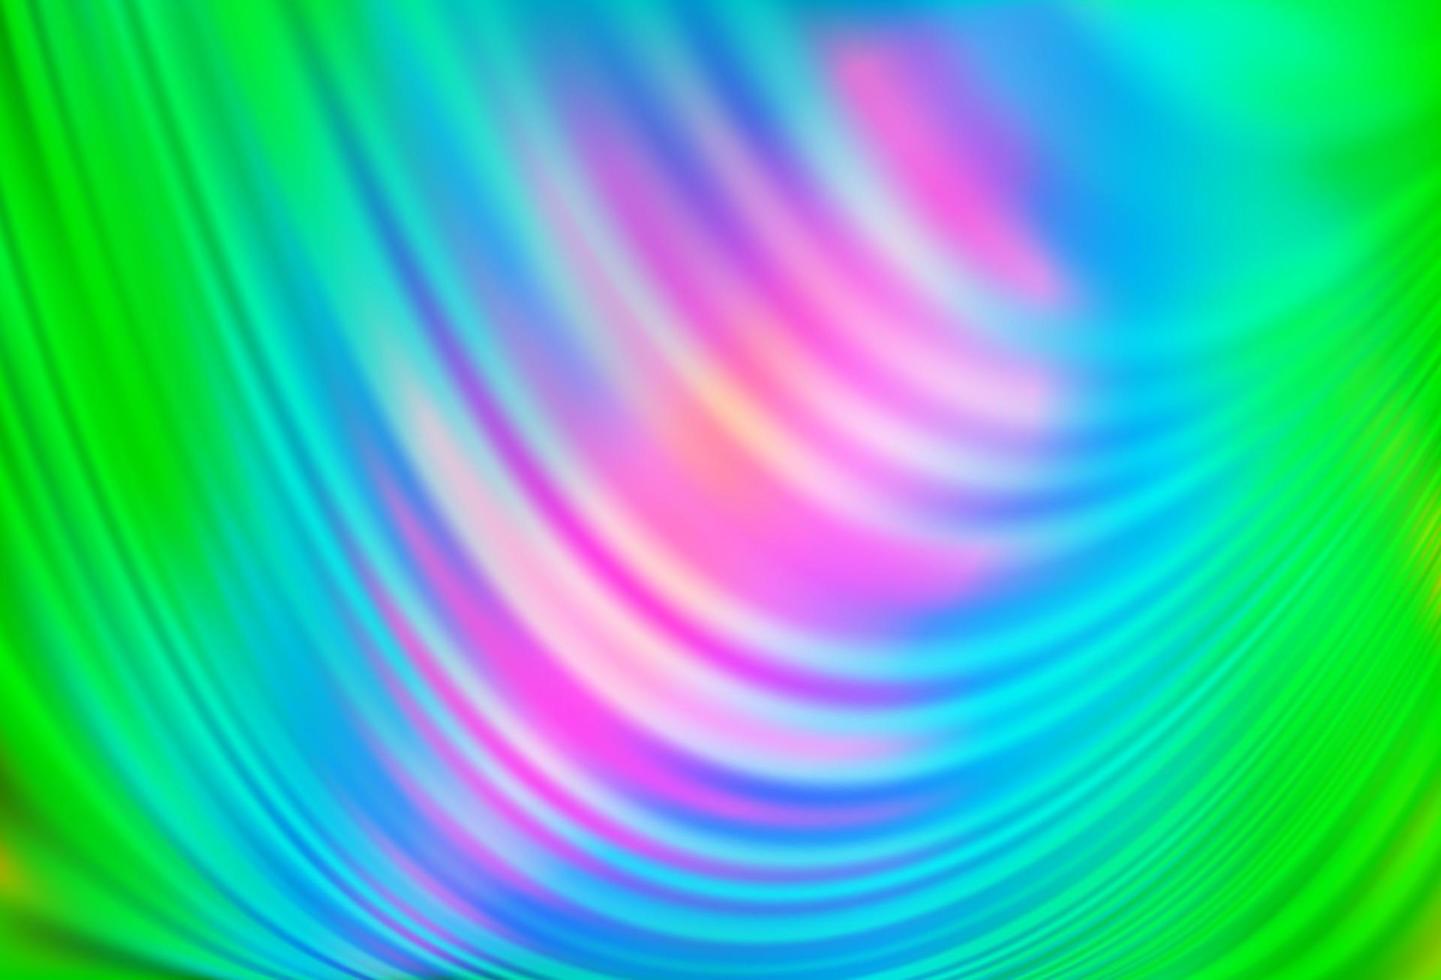 luz multicolorida, fundo do vetor do arco-íris com formas de bolha.